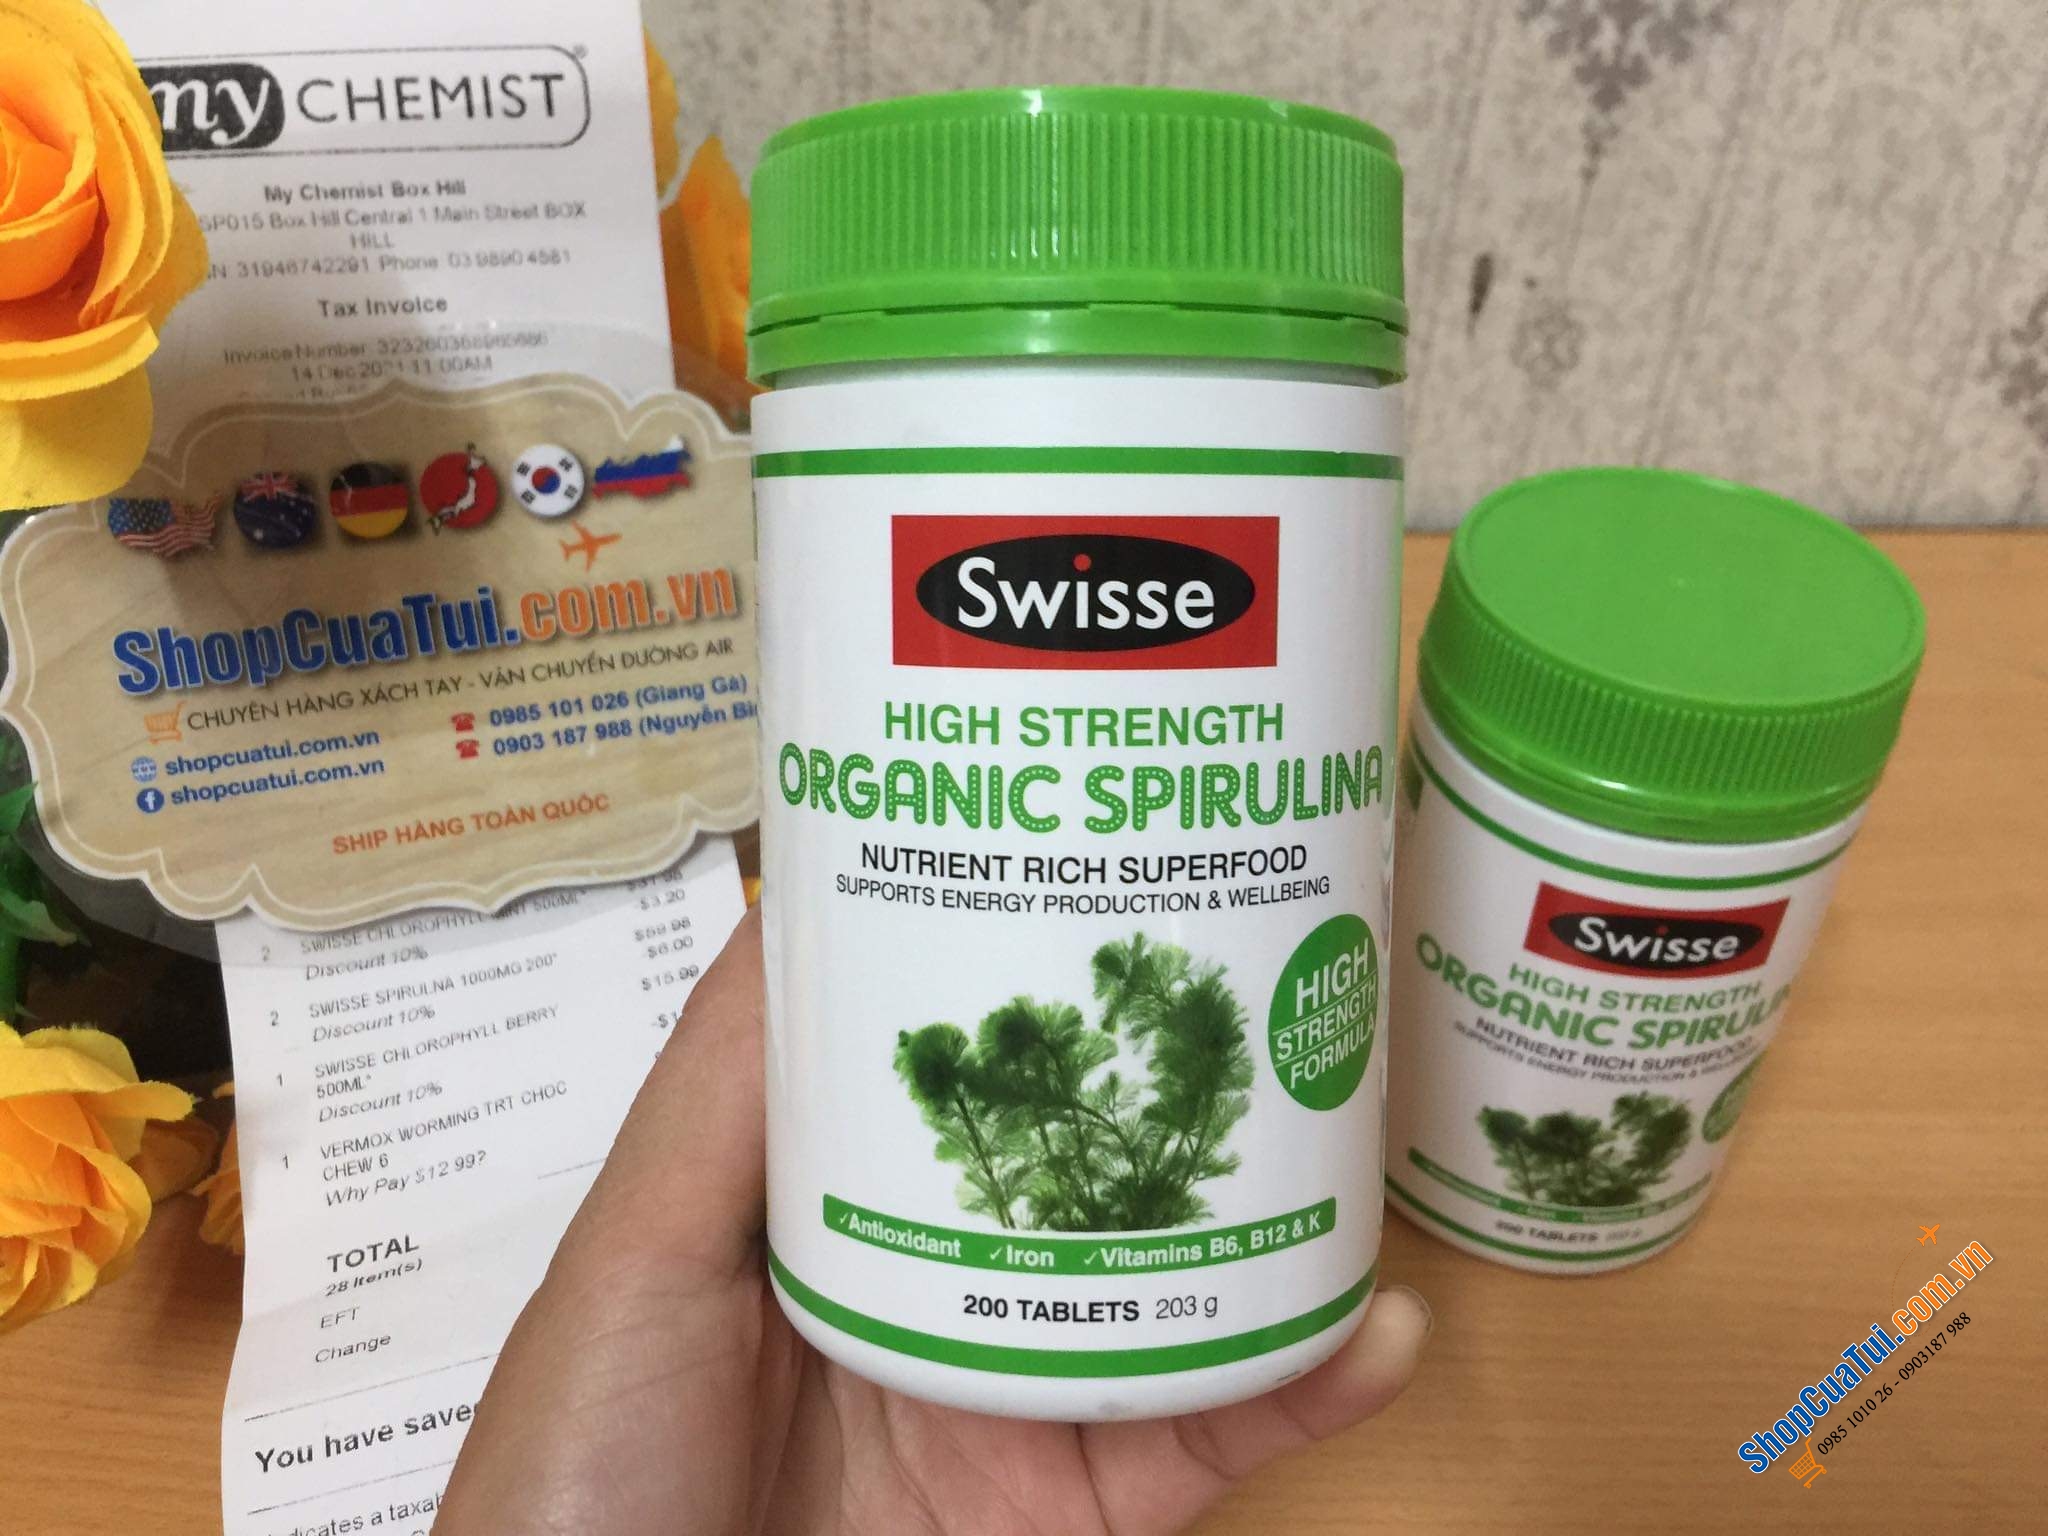 TẢO XOẮN HỮU CƠ LIỀU CAO CỦA Swisse High Strength Organic Spirulina 1000mg LỌ 200 VIÊN - một siêu thực phẩm xanh cung cấp nguồn vitamin, khoáng chất và chất chống oxy hóa tự nhiên